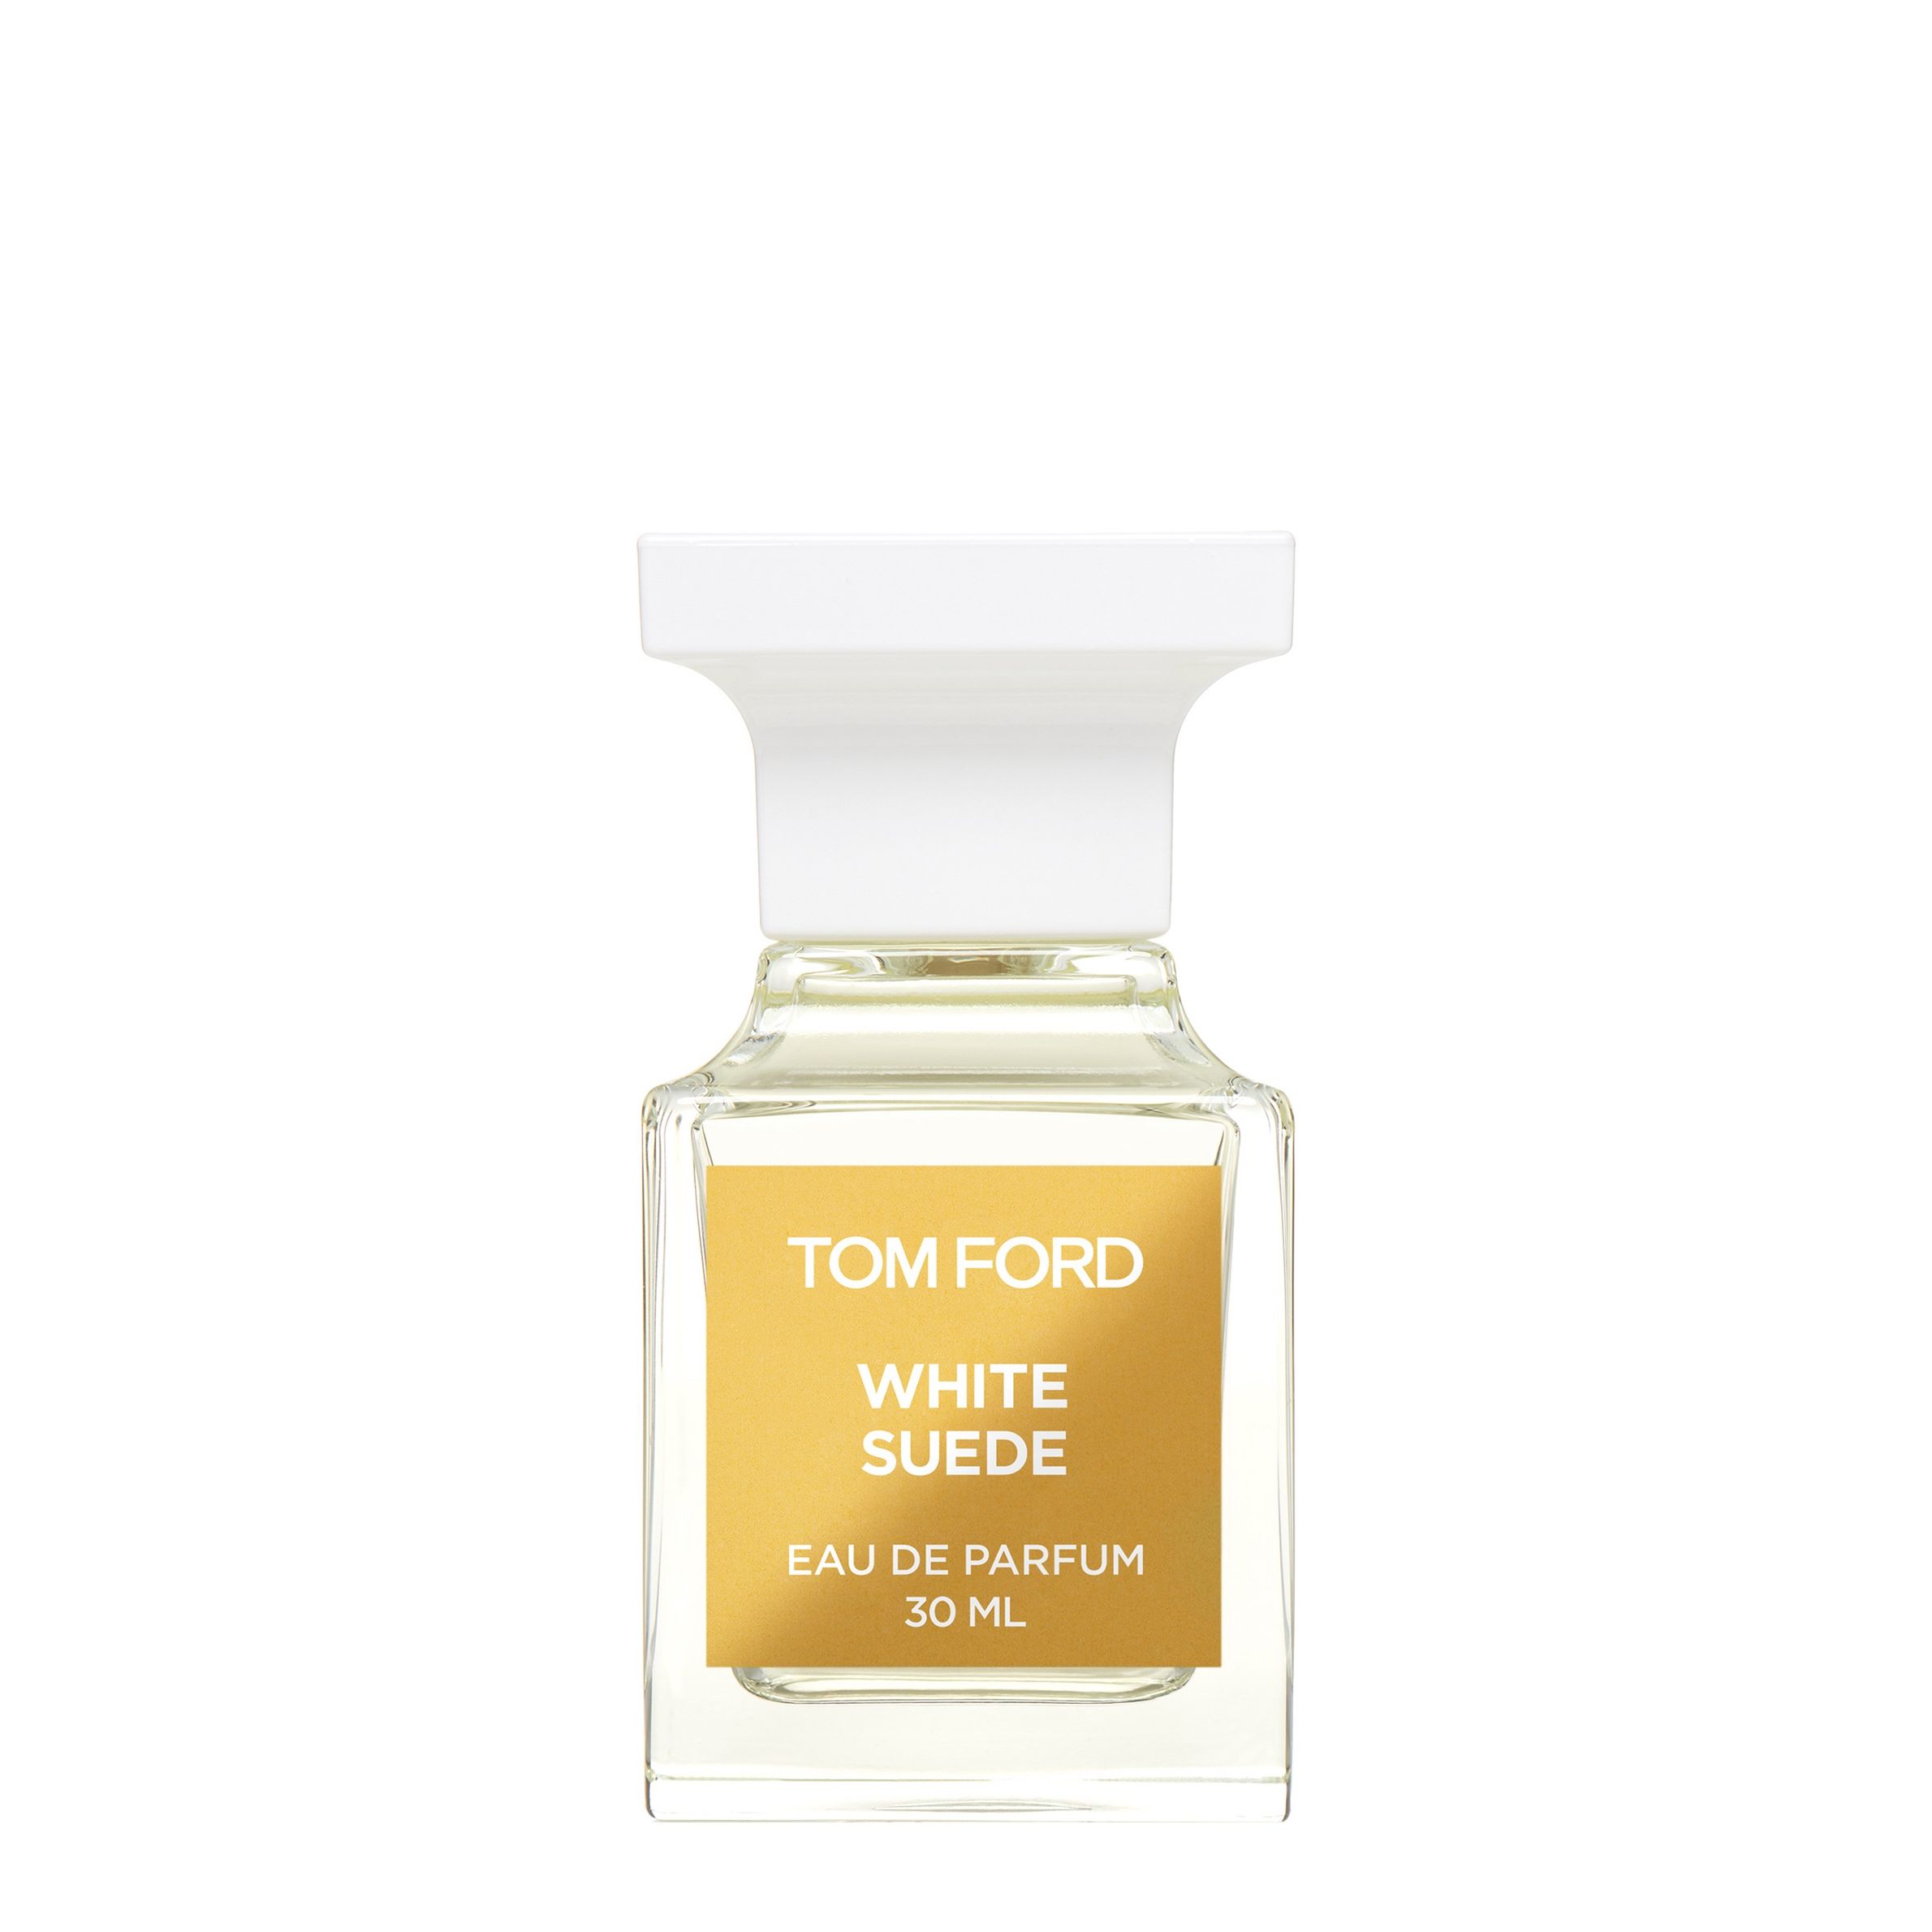 Вода парфюмерная Tom Ford White Suede, унисекс, 30 мл bio textiles халат вафельный унисекс white